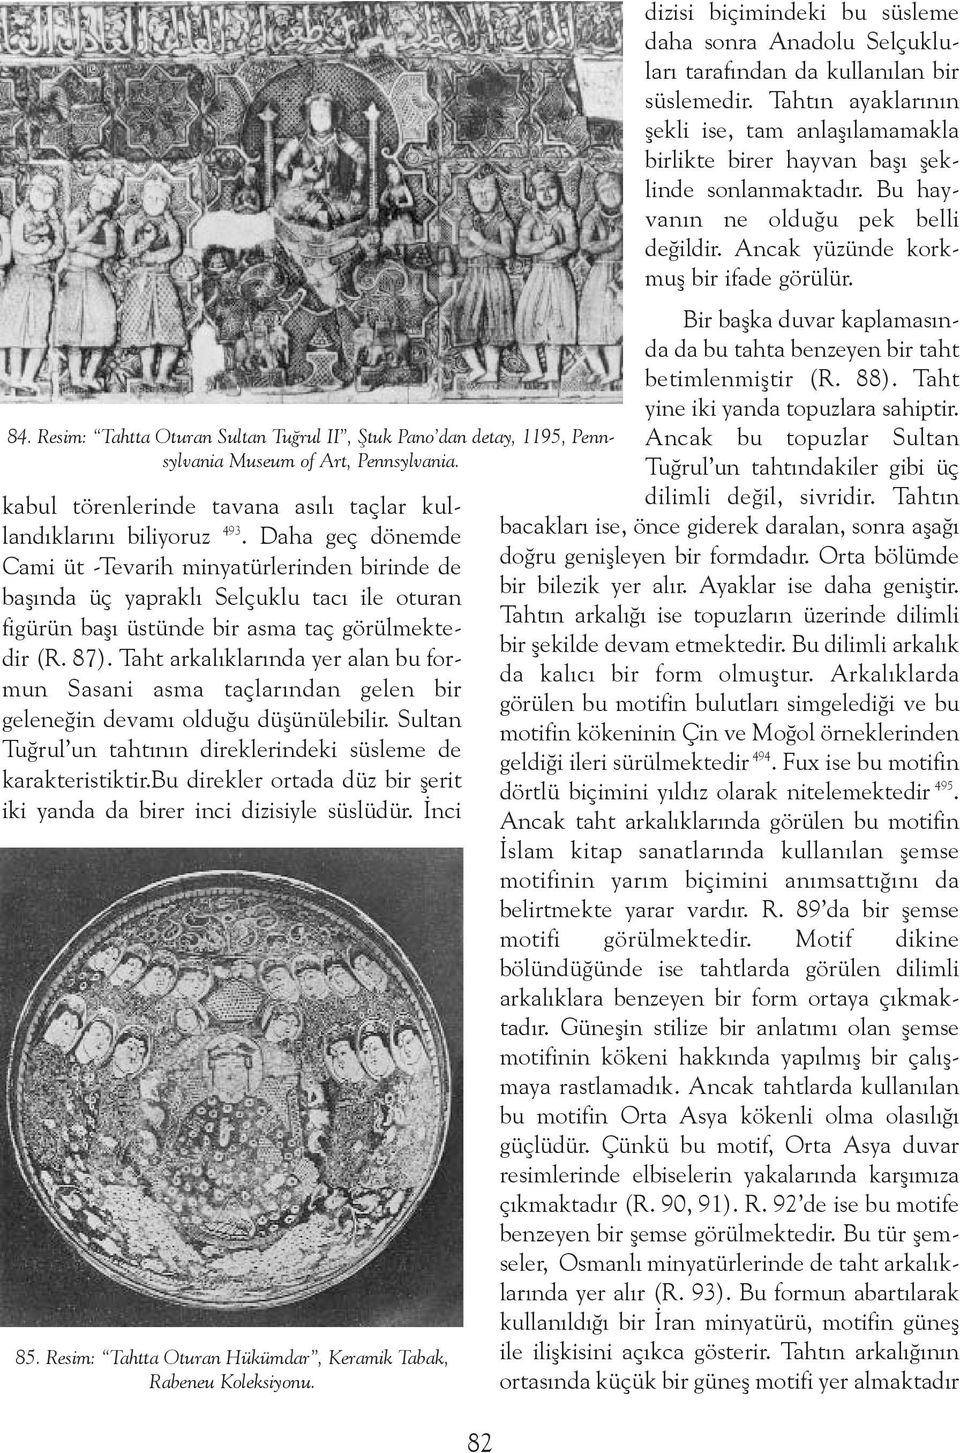 Taht arkalýklarýnda yer alan bu formun Sasani asma taçlarýndan gelen bir geleneðin devamý olduðu düþünülebilir. Sultan Tuðrul un tahtýnýn direklerindeki süsleme de karakteristiktir.